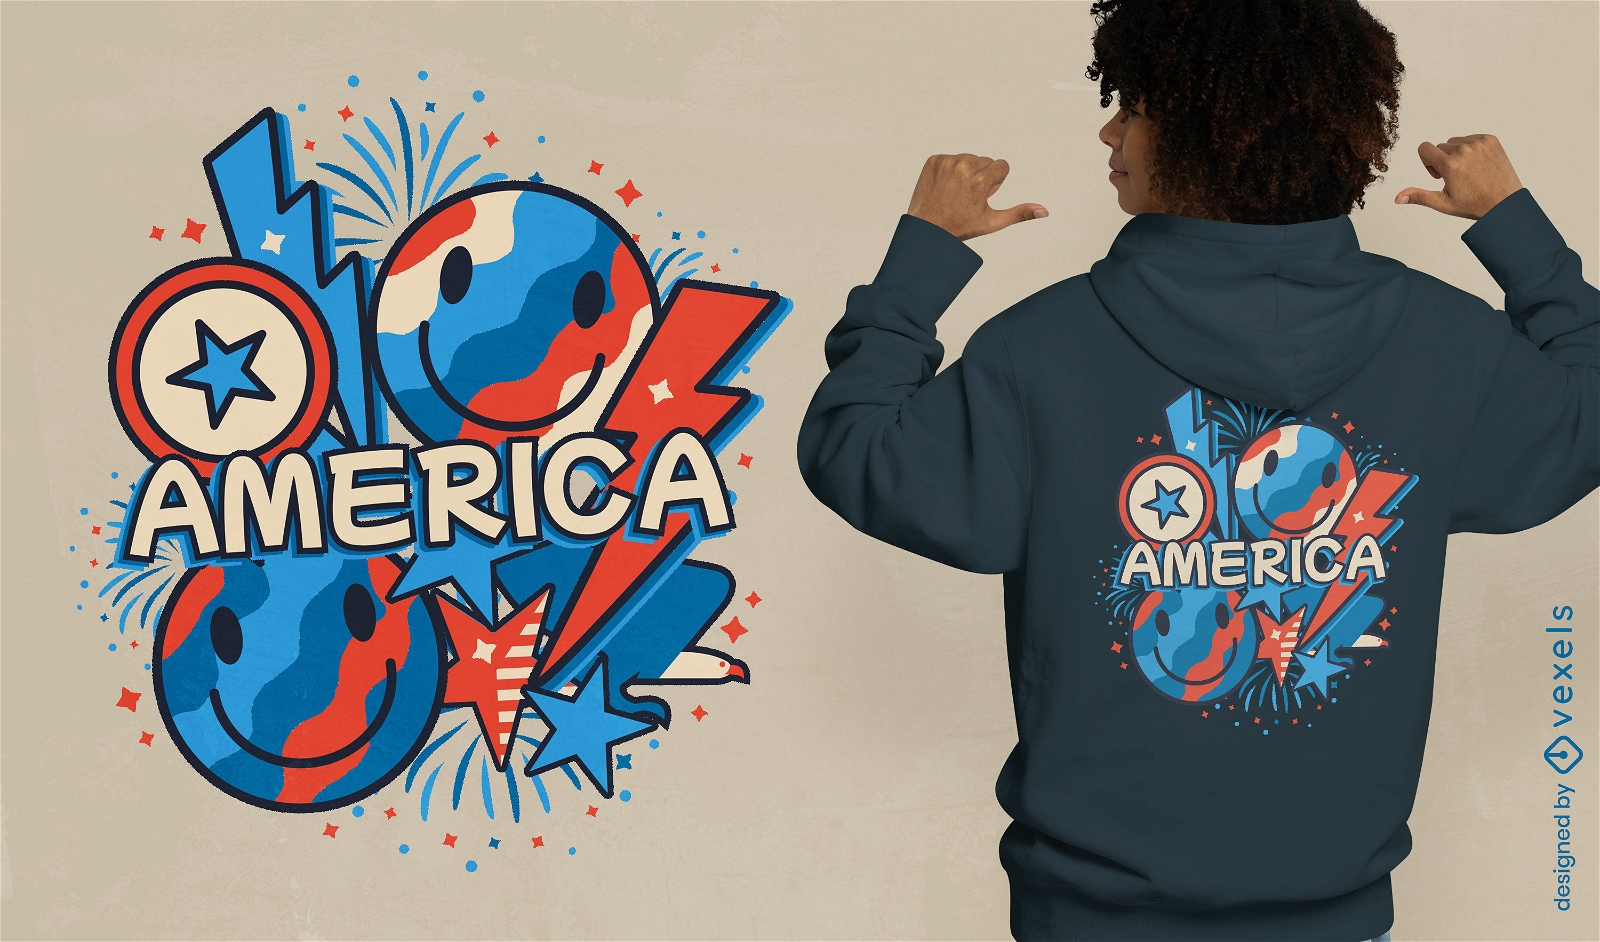 Diseño de camiseta de América explosiva.